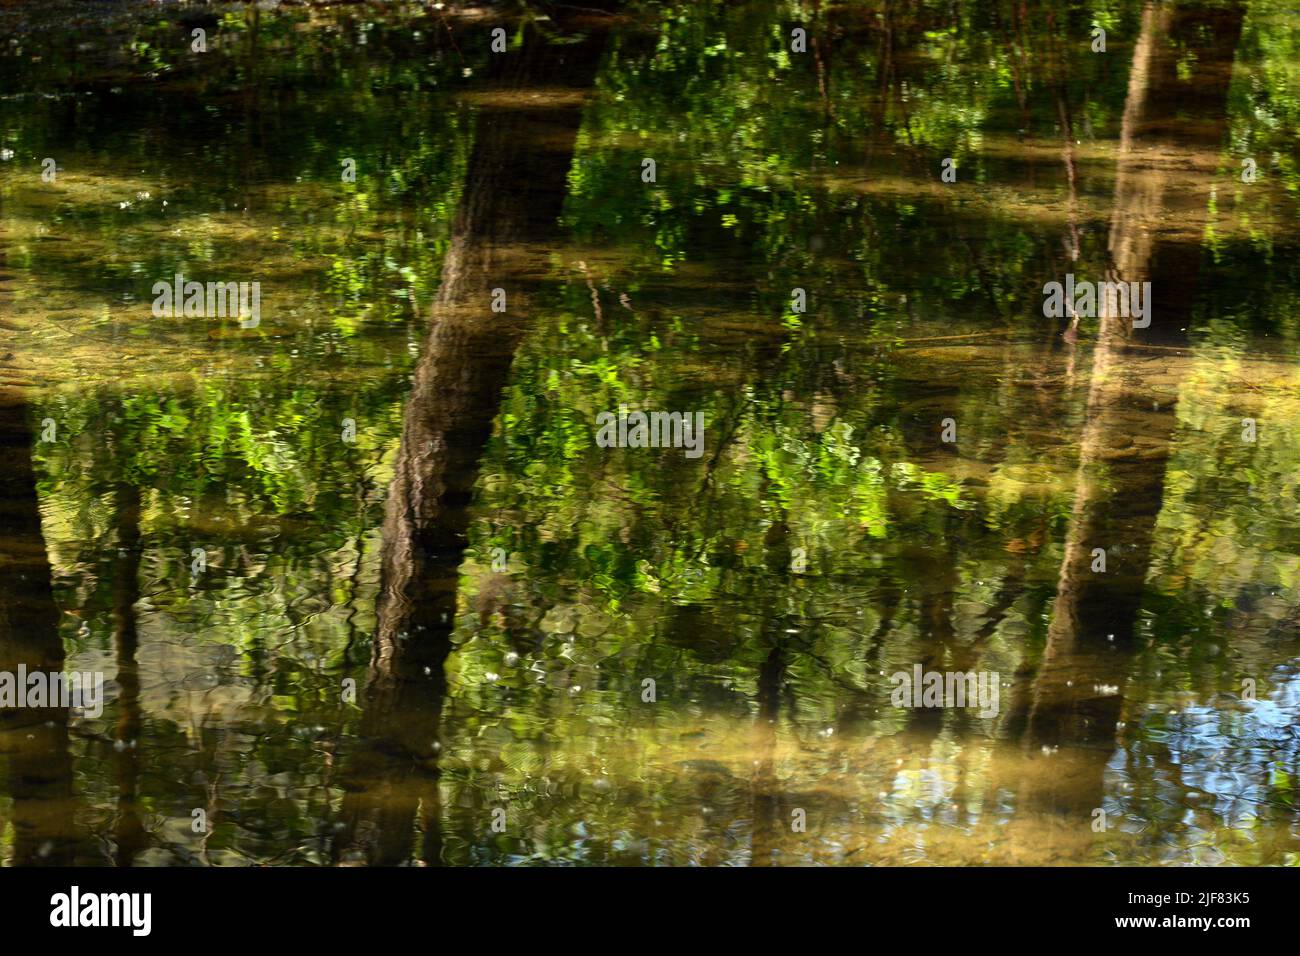 Reflejo en el agua del bosque, acuarela natural Stock Photo